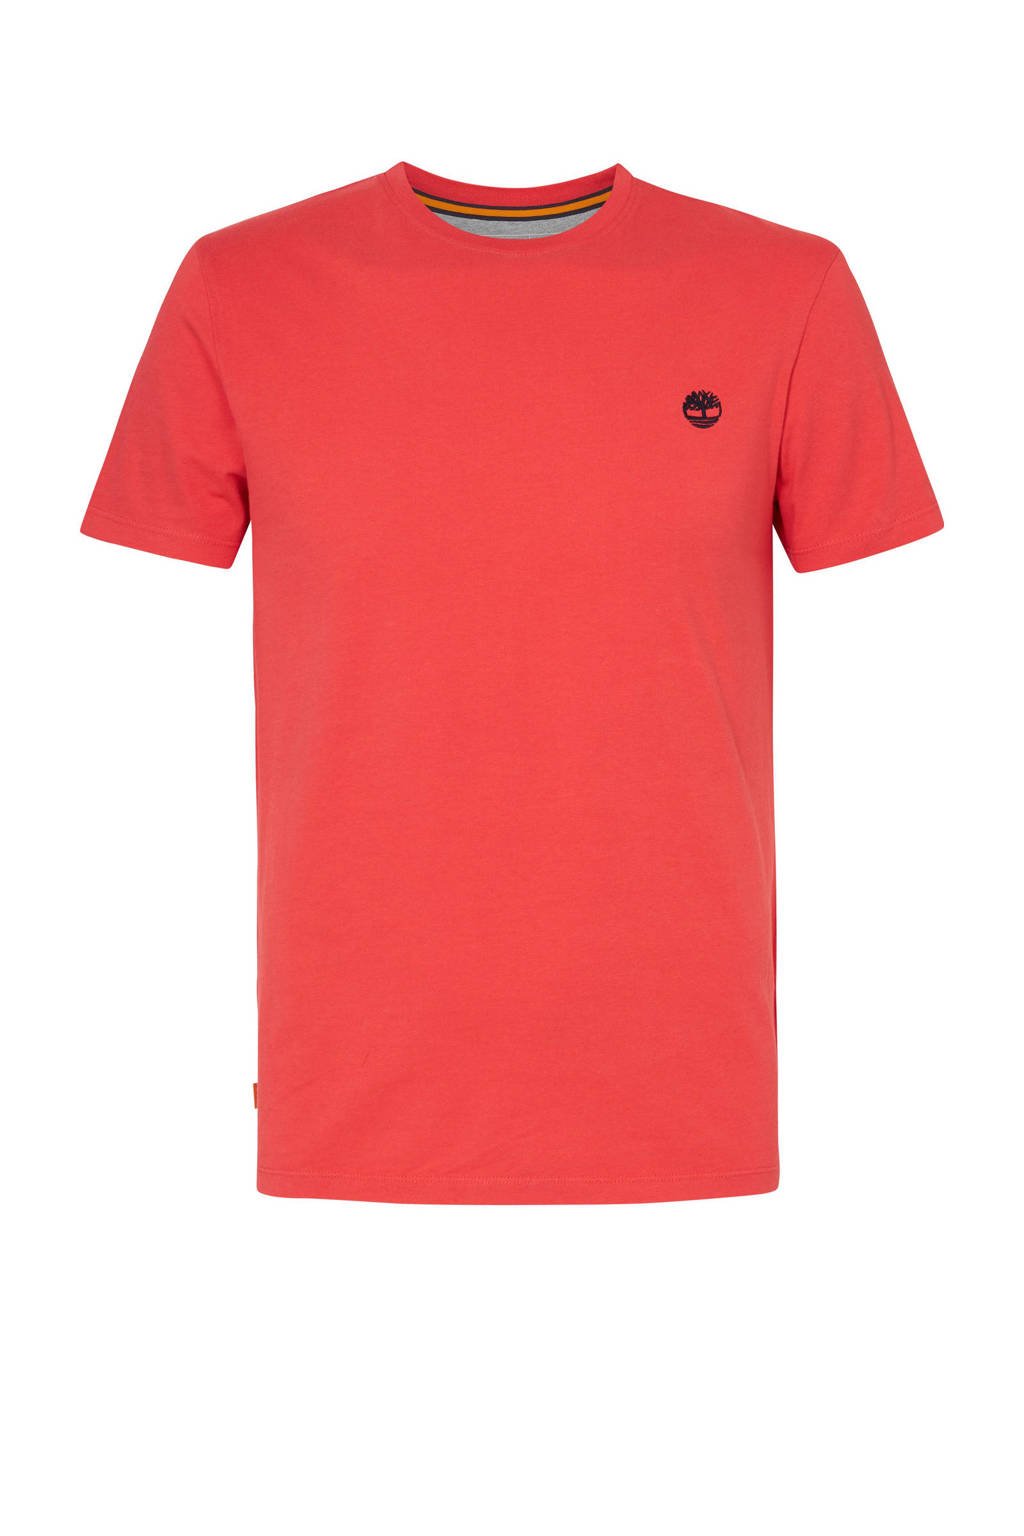 Timberland T-shirt met logo koraalrood, Koraalrood